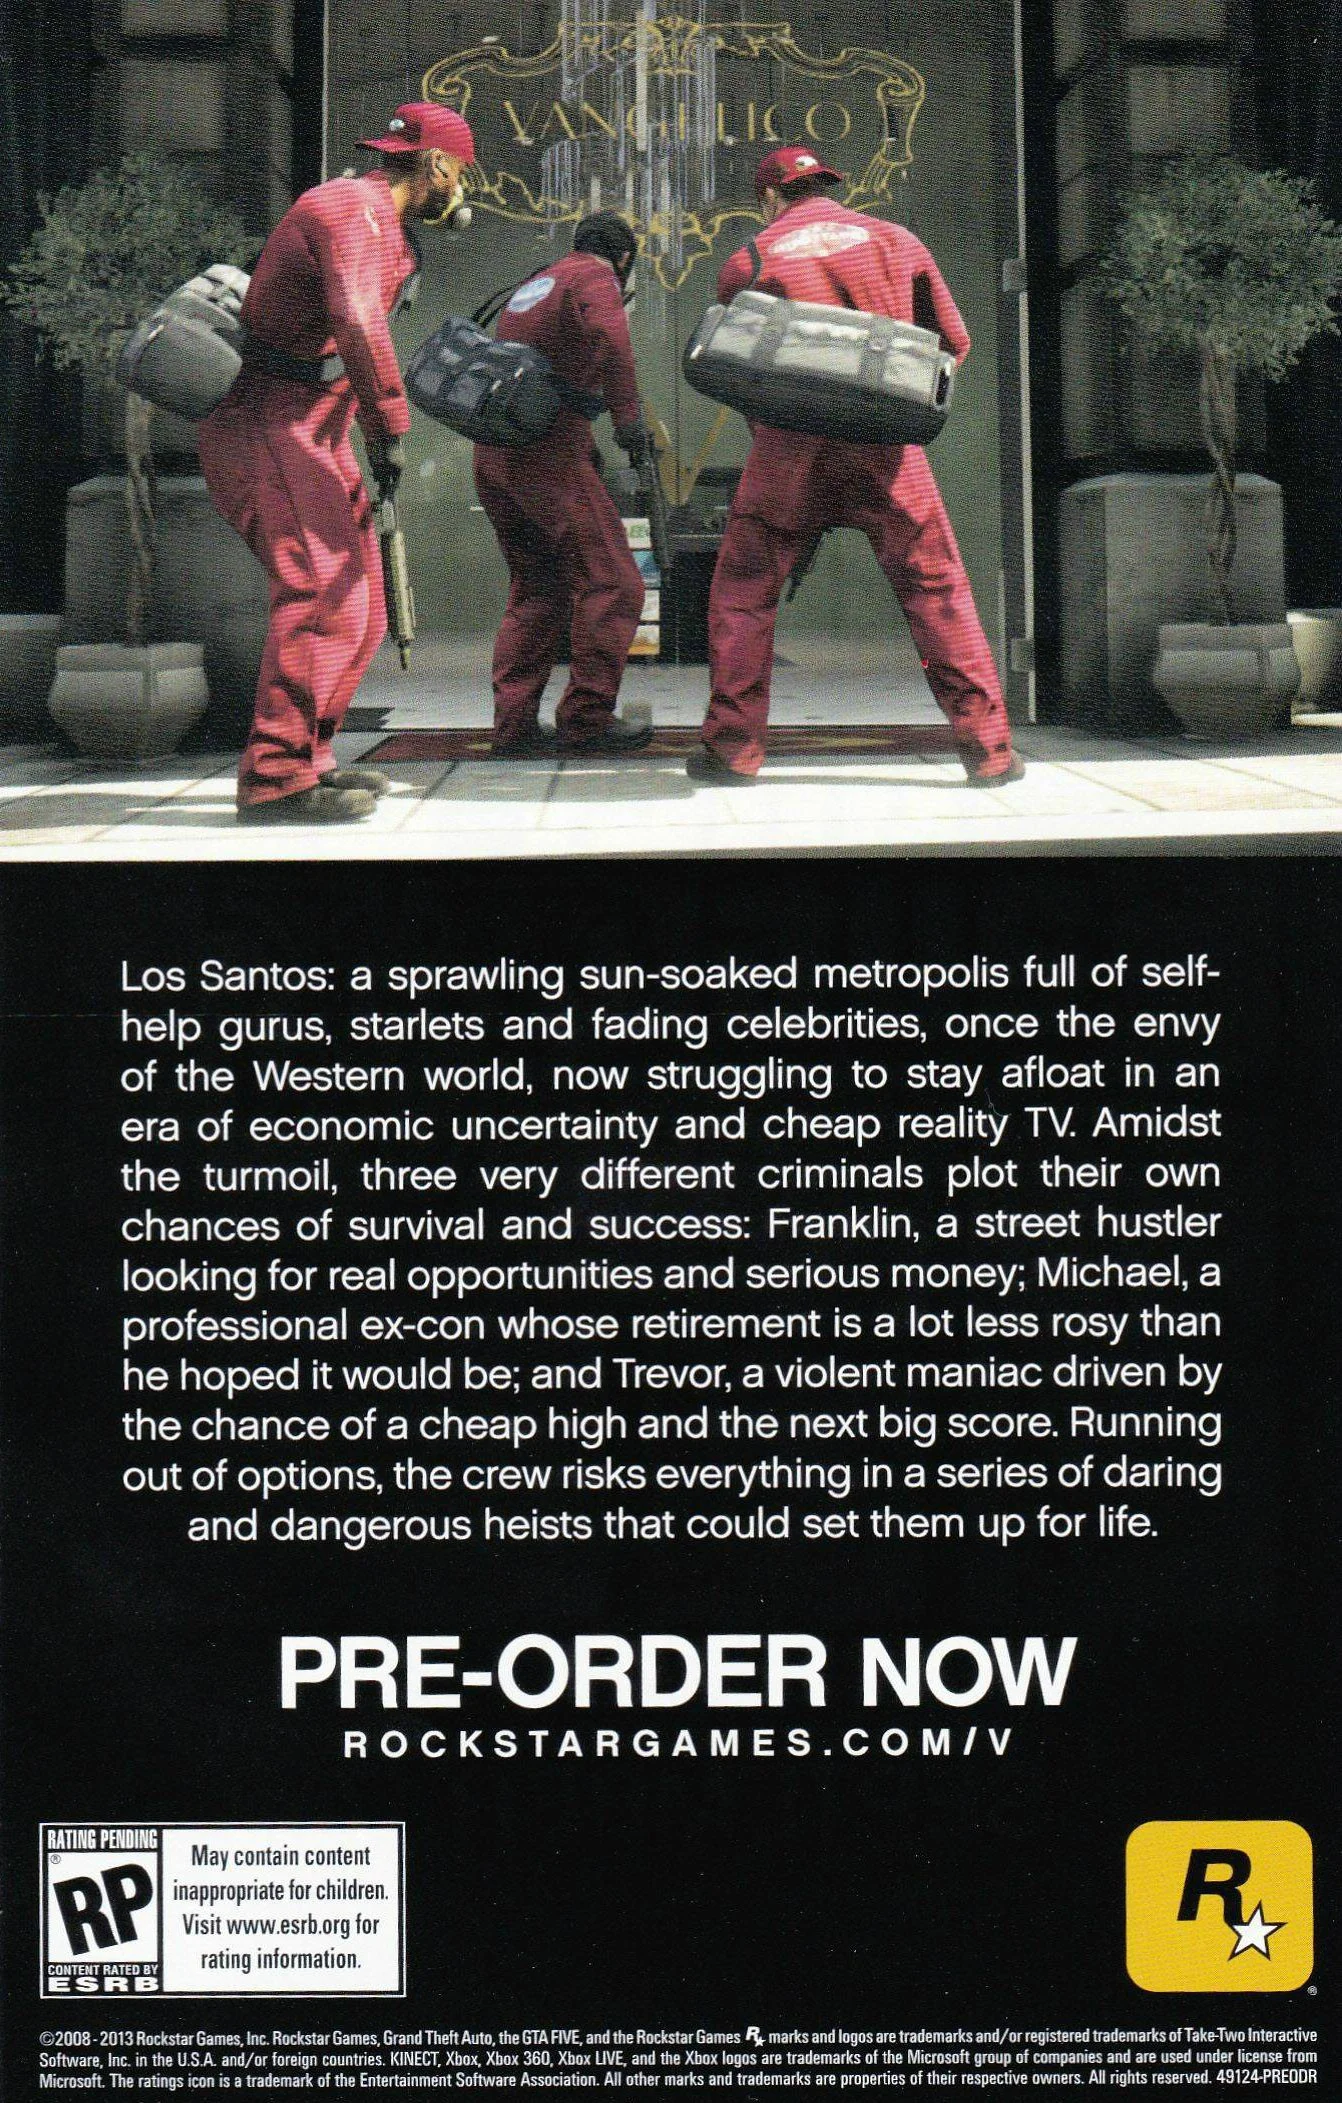 Рекламный постер GTA V нашли в коробке от Red Dead Redemption - фото 2